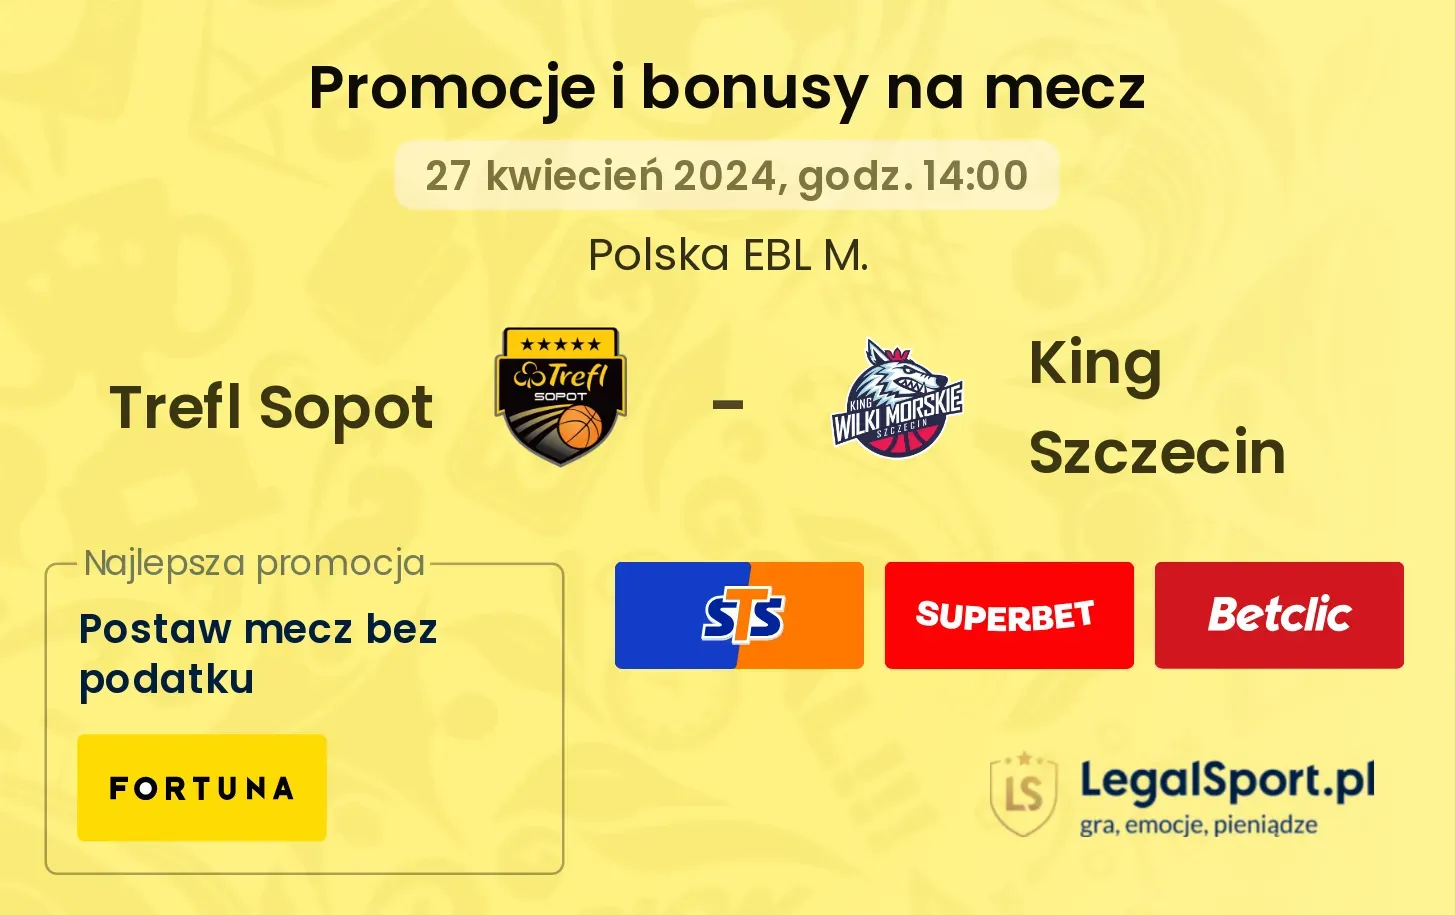 Trefl Sopot - King Szczecin promocje bonusy na mecz